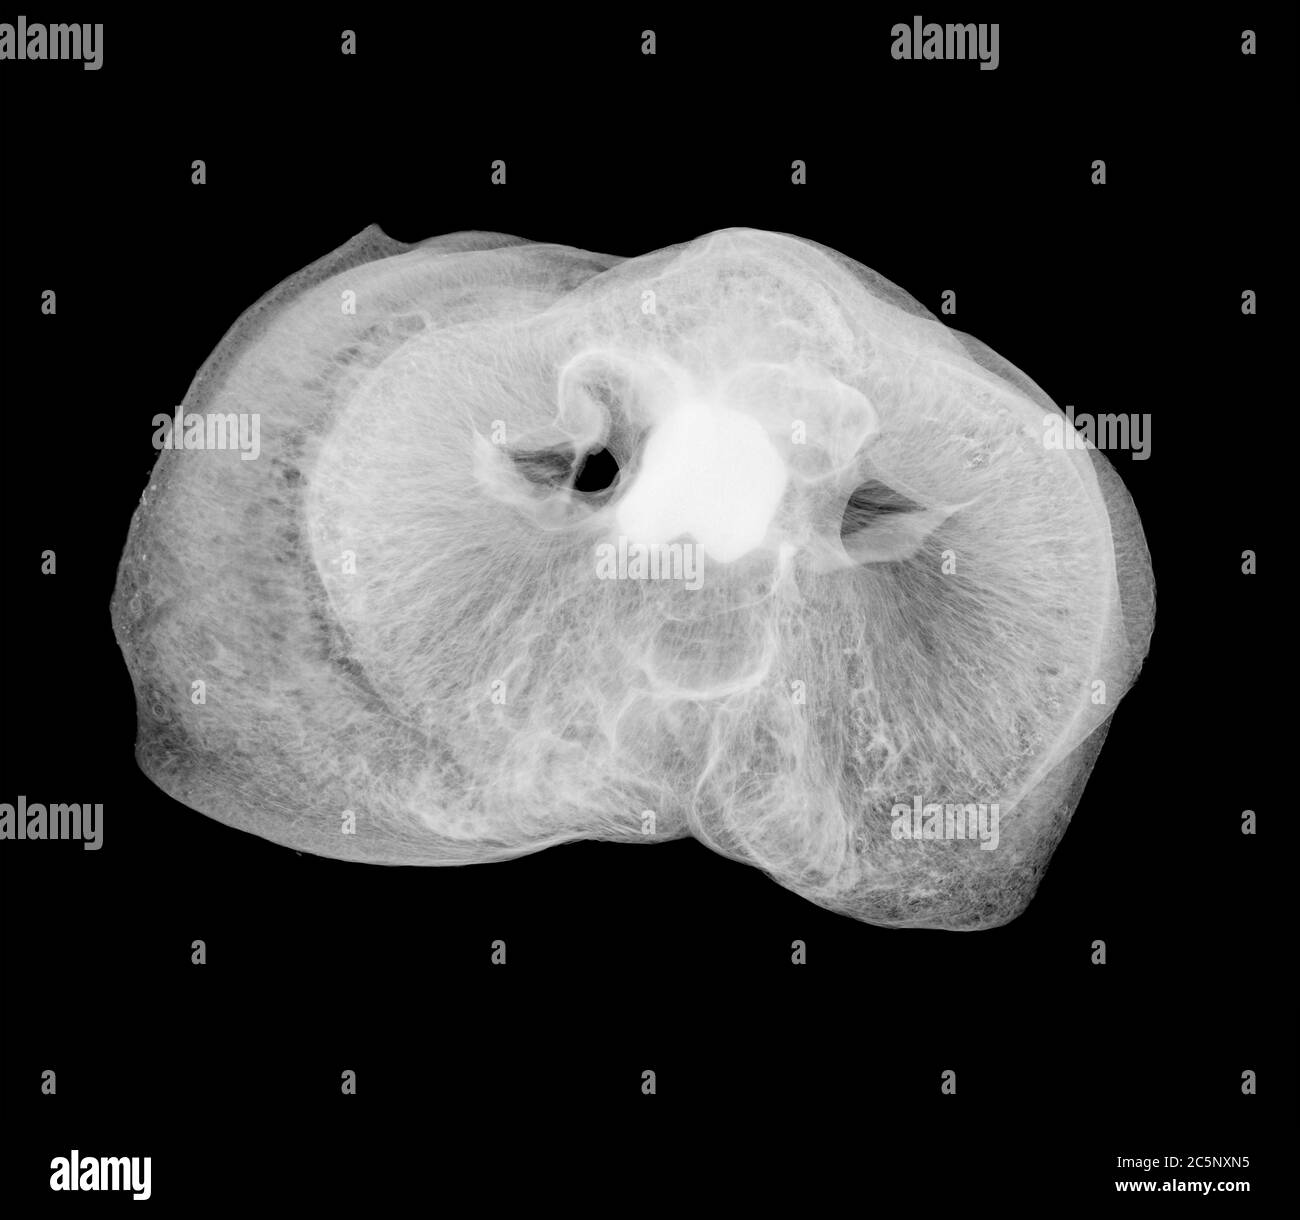 El pico del cerdo, rayos X. Foto de stock